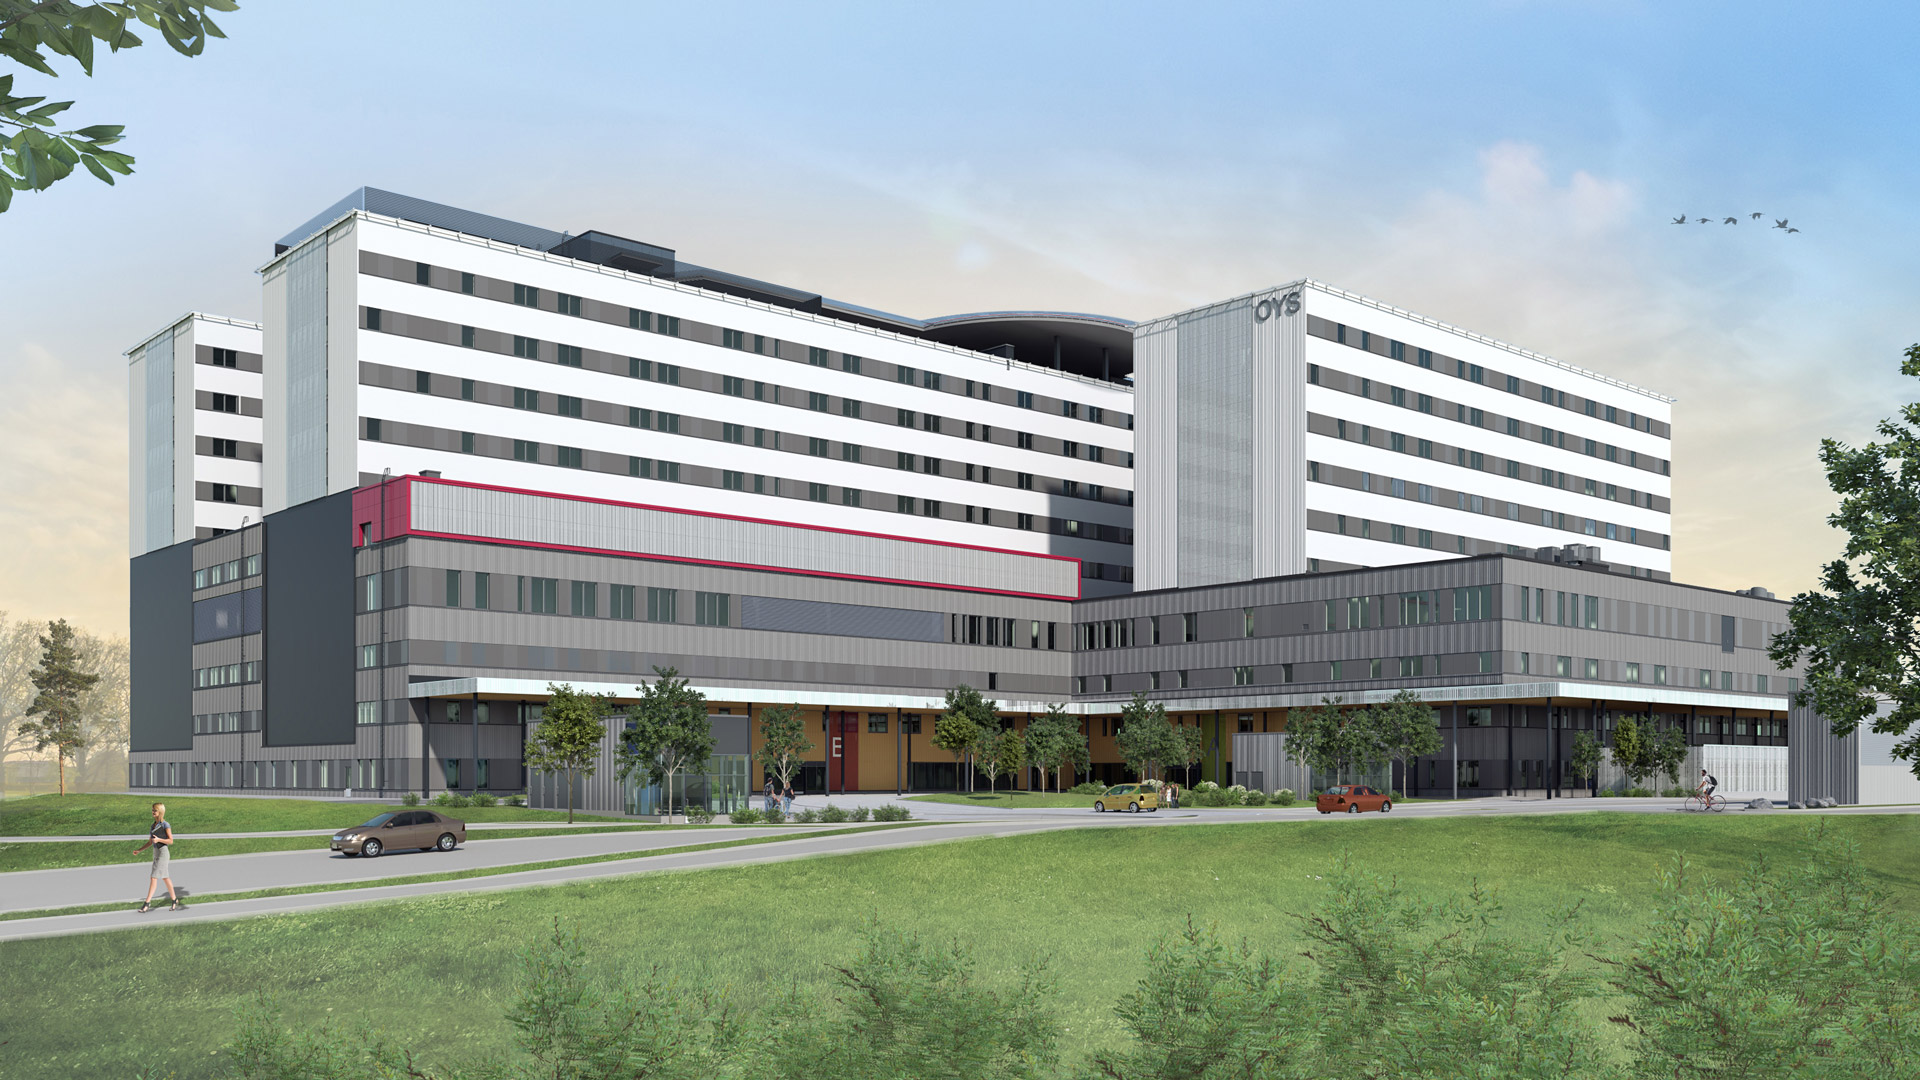 Havainnekuva OYS tulevaisuuden sairaalan ensimmäisen vaiheen suunnitelmista. Kuvassa ensimmäinen vaihe kuvattuna pihan puolelta